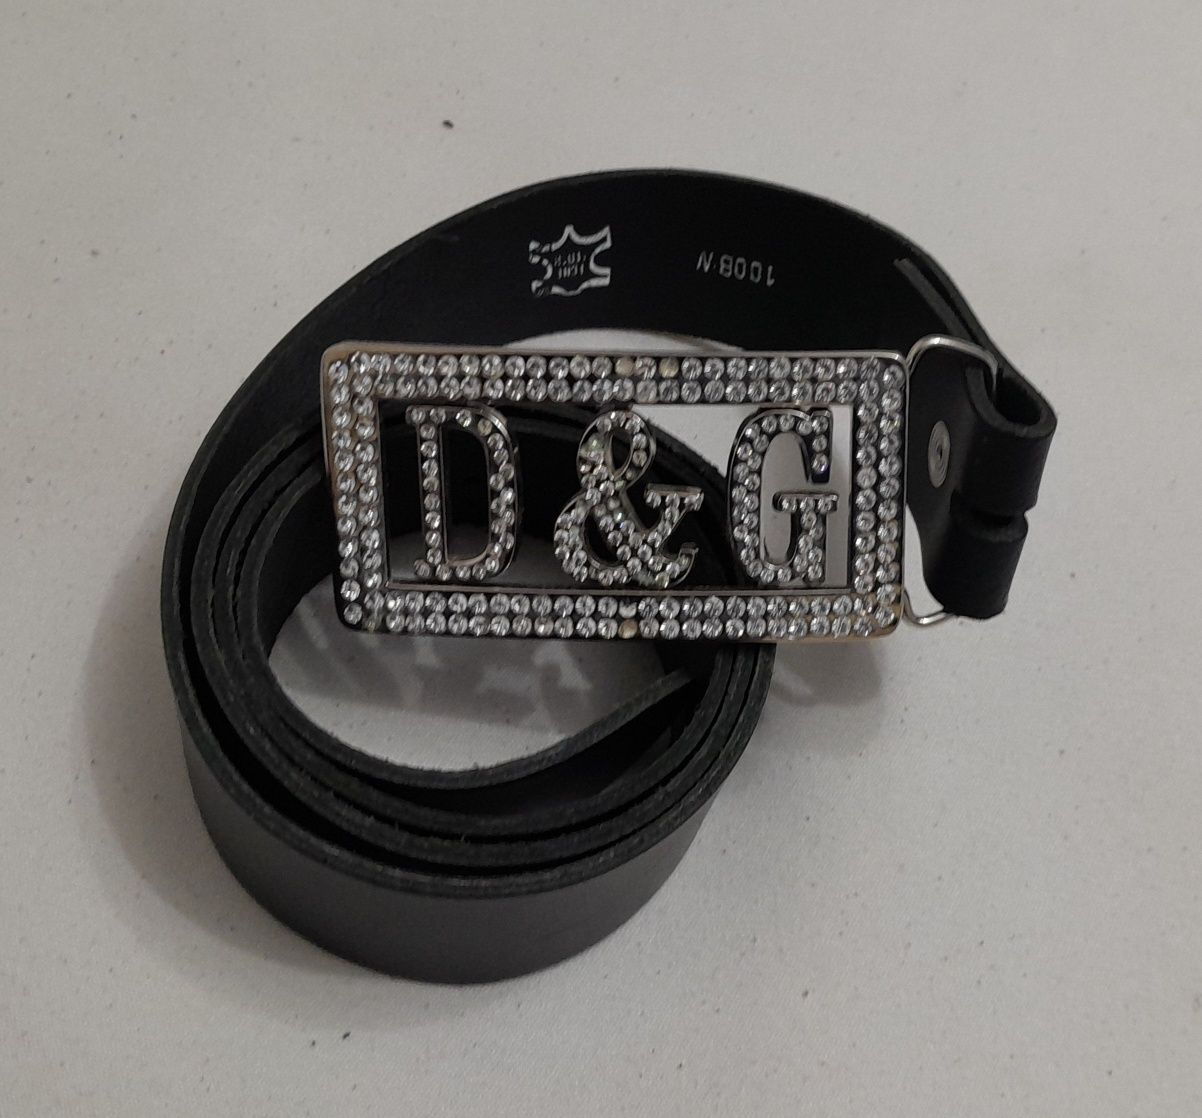 Curea D&G reglabilă, centura Dolce & Gabbana piele naturală neagră 114